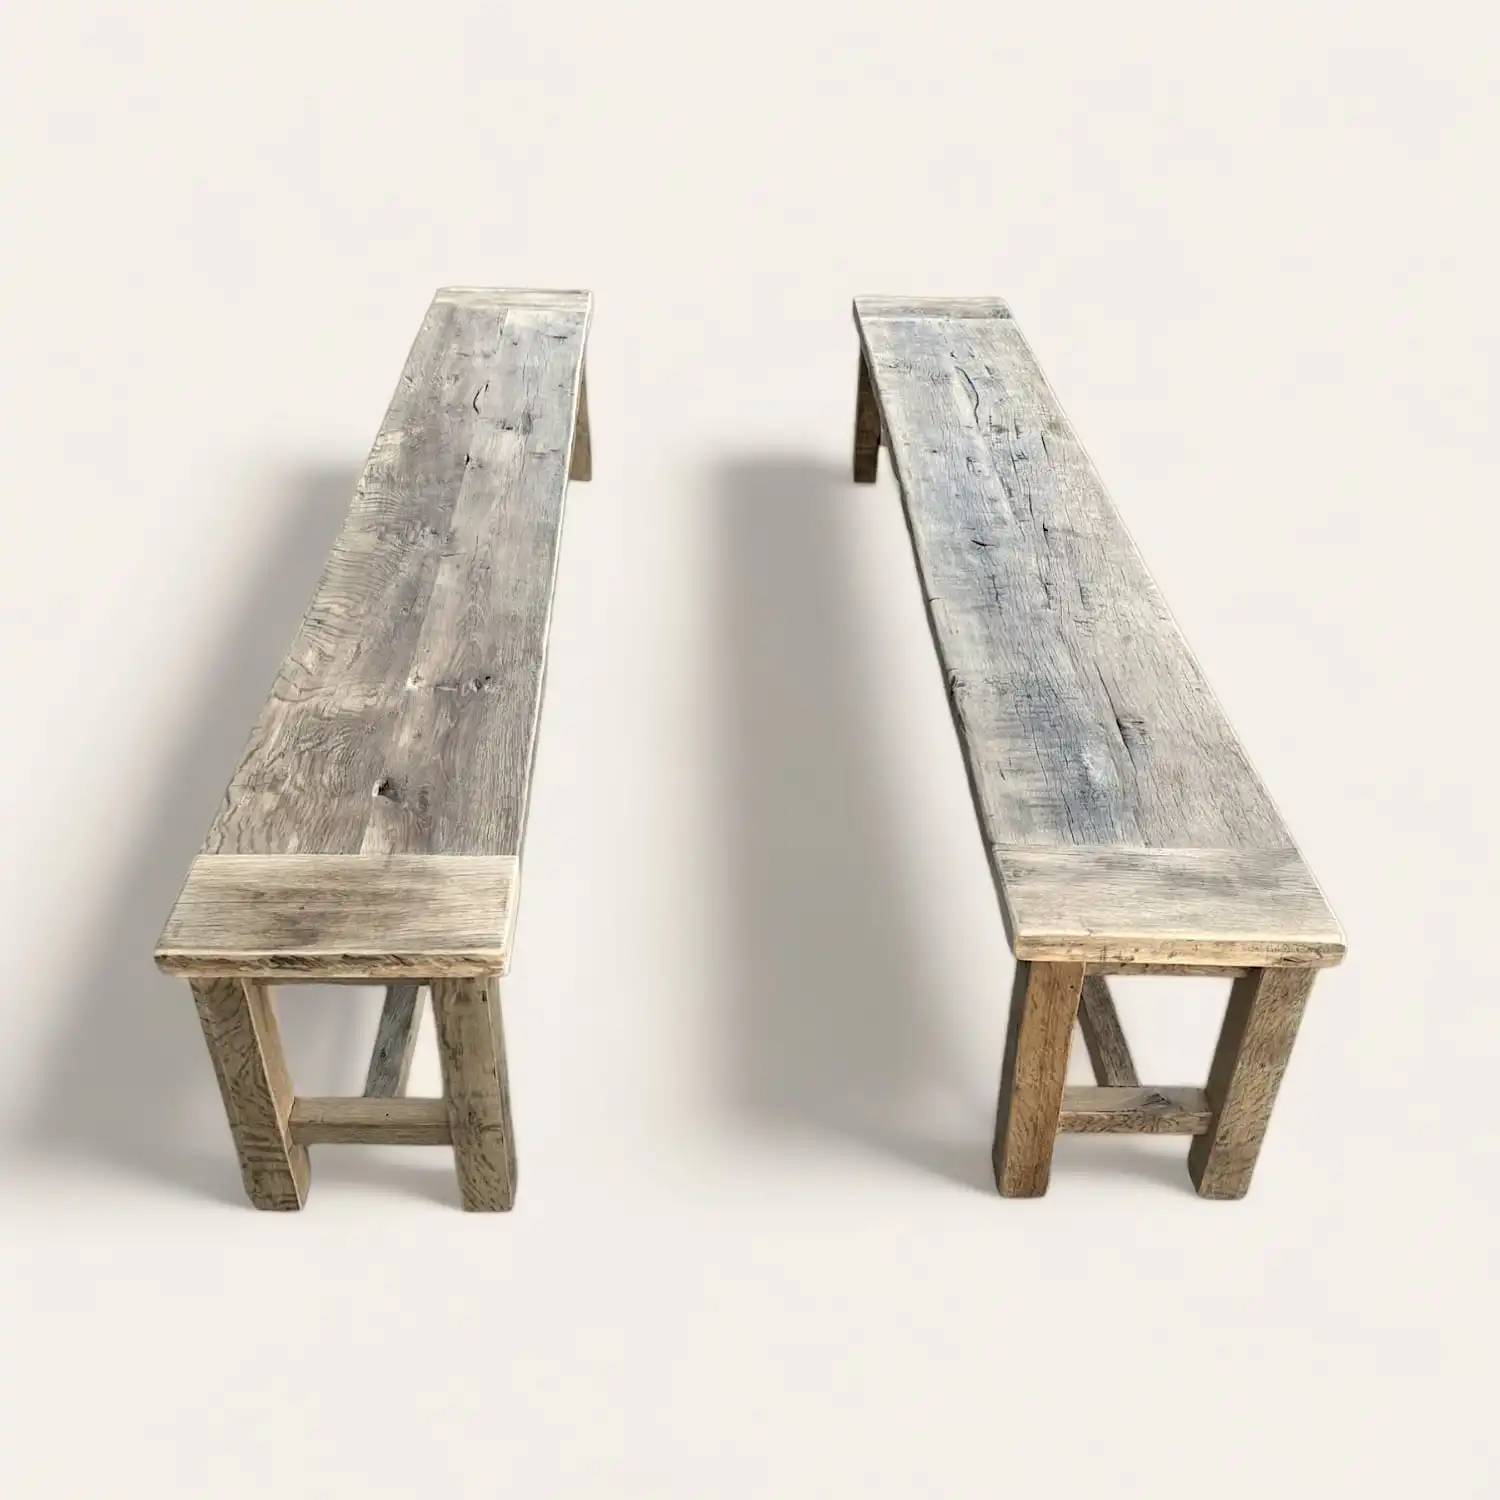  Deux bancs rustiques en bois sur fond blanc. 